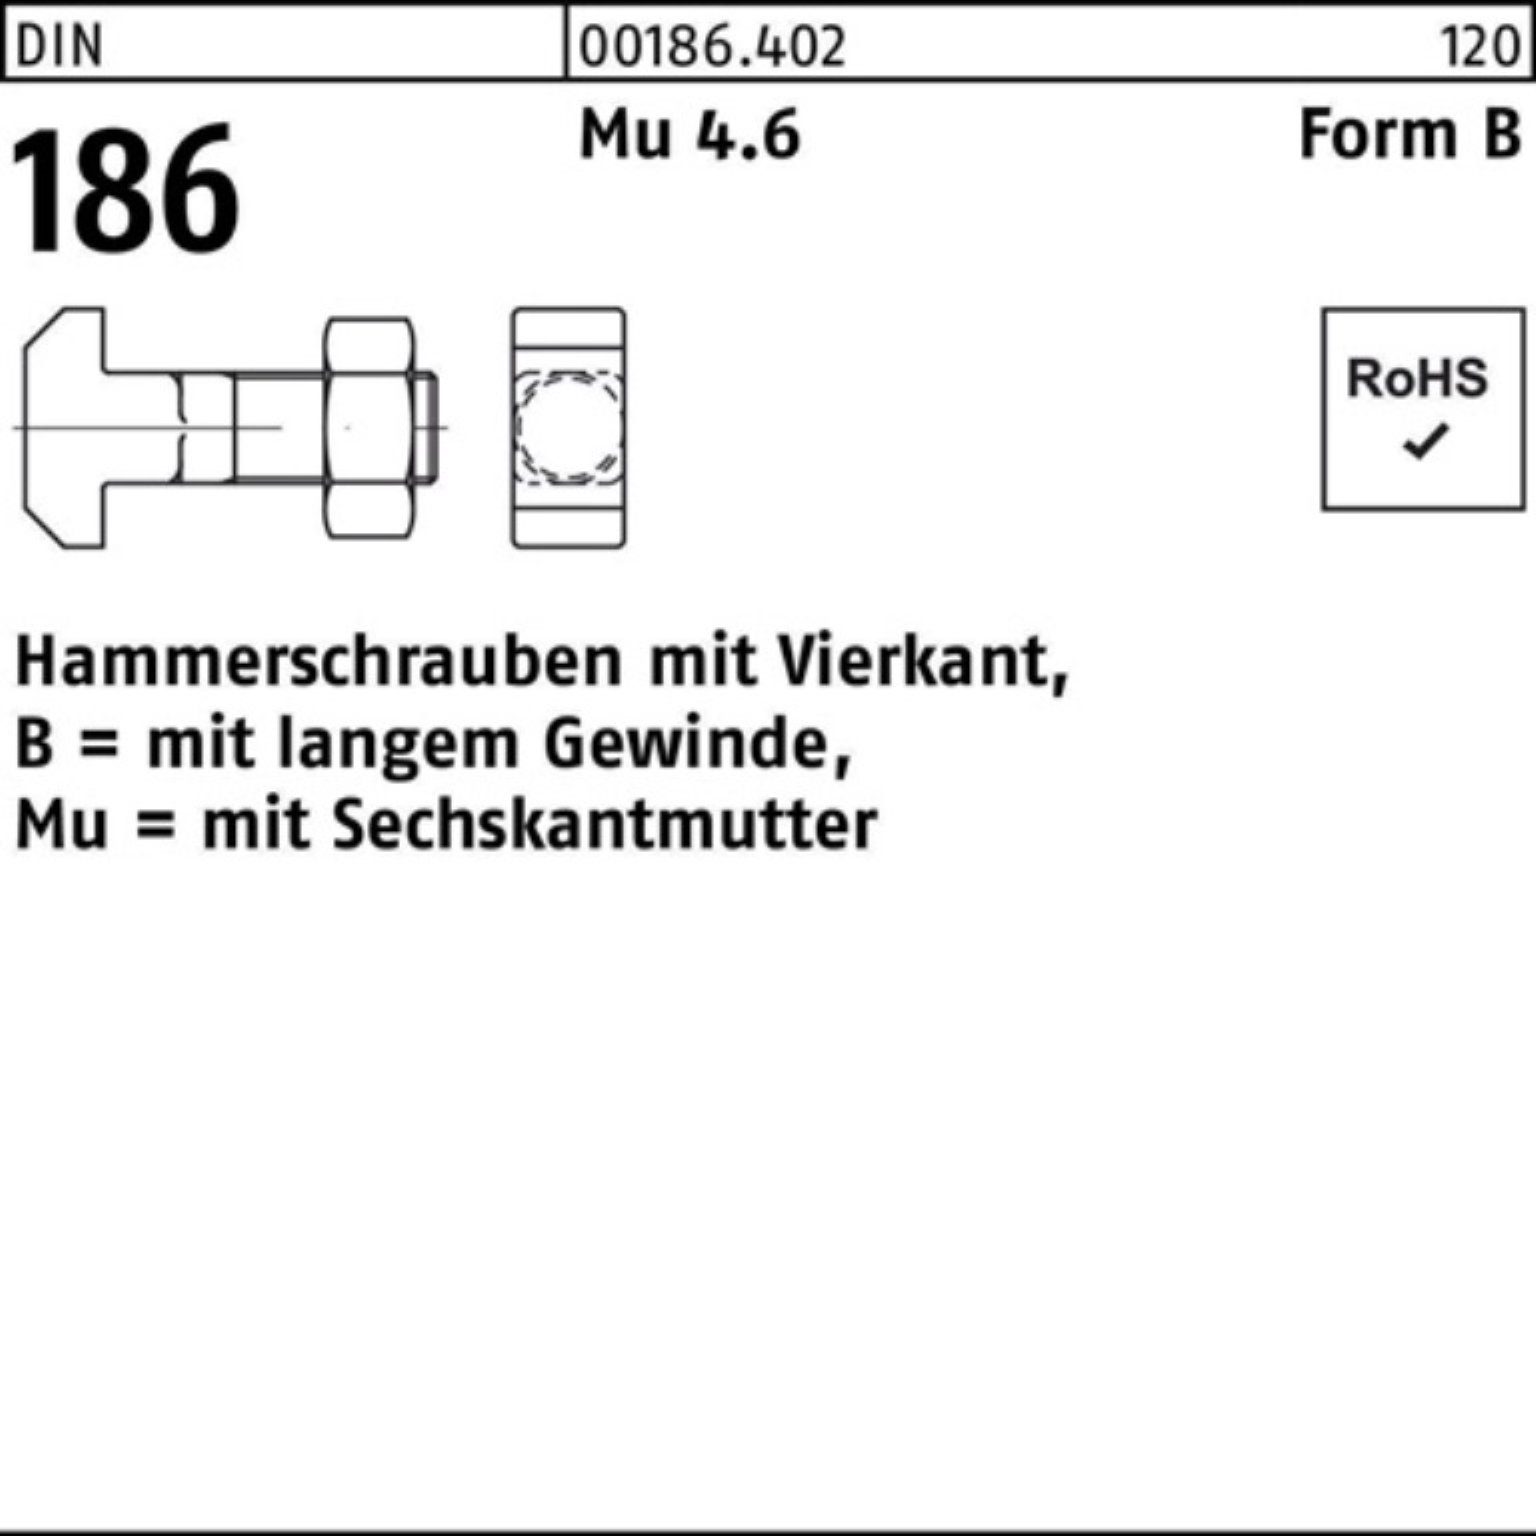 Vierkant Pack 10x Reyher 186 6-ktmutter FormB 45 DIN Hammerschraube Schraube 100er BM